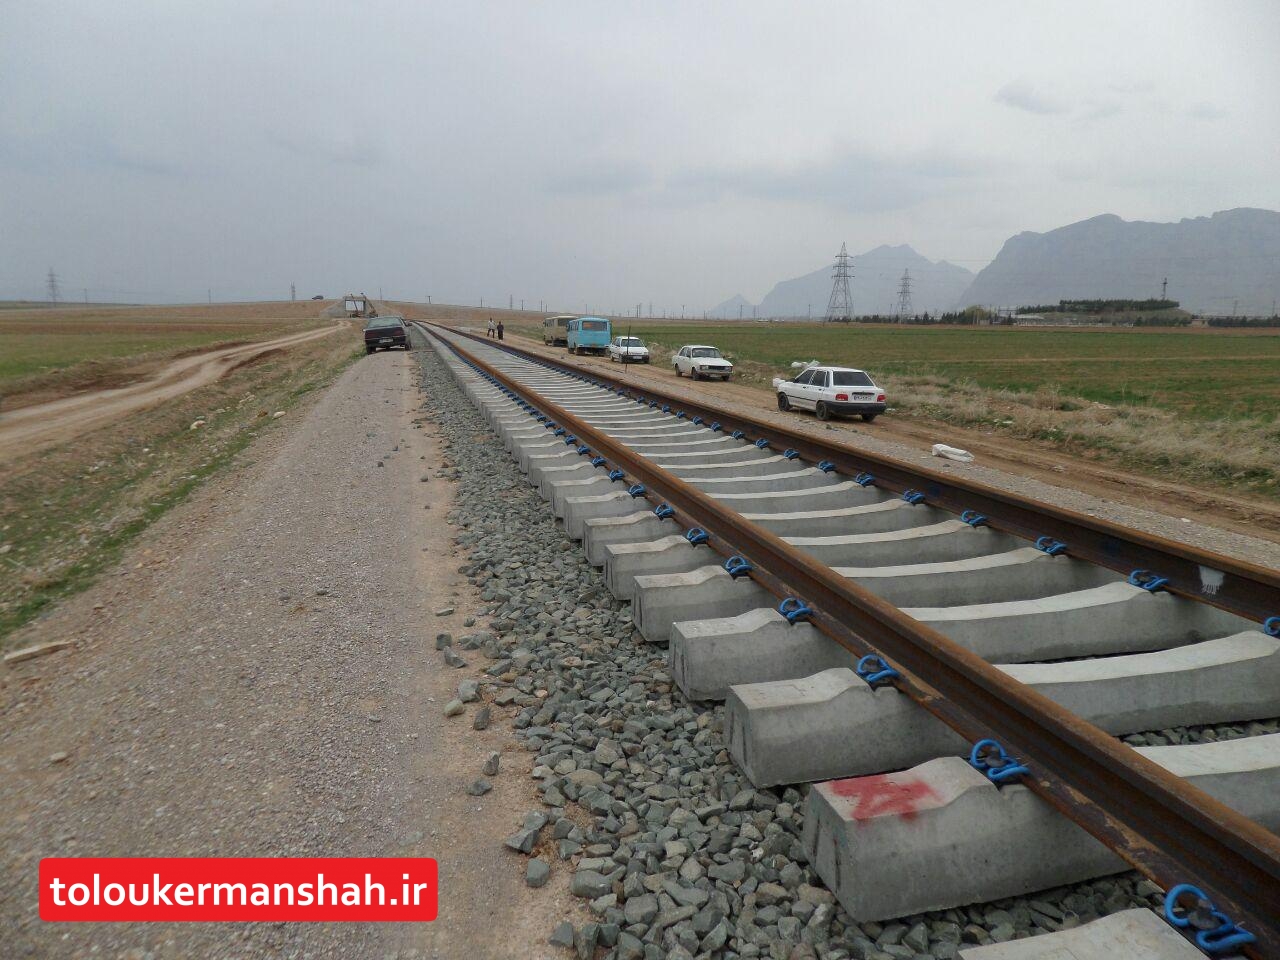 اعتراض استاندار کرمانشاه به مصوبه‌ای که راه‌آهن خسروی را تعطیل کرده است/باید به حال استانی که در تهران برایش تصمیم می‌گیرند، گریه کرد